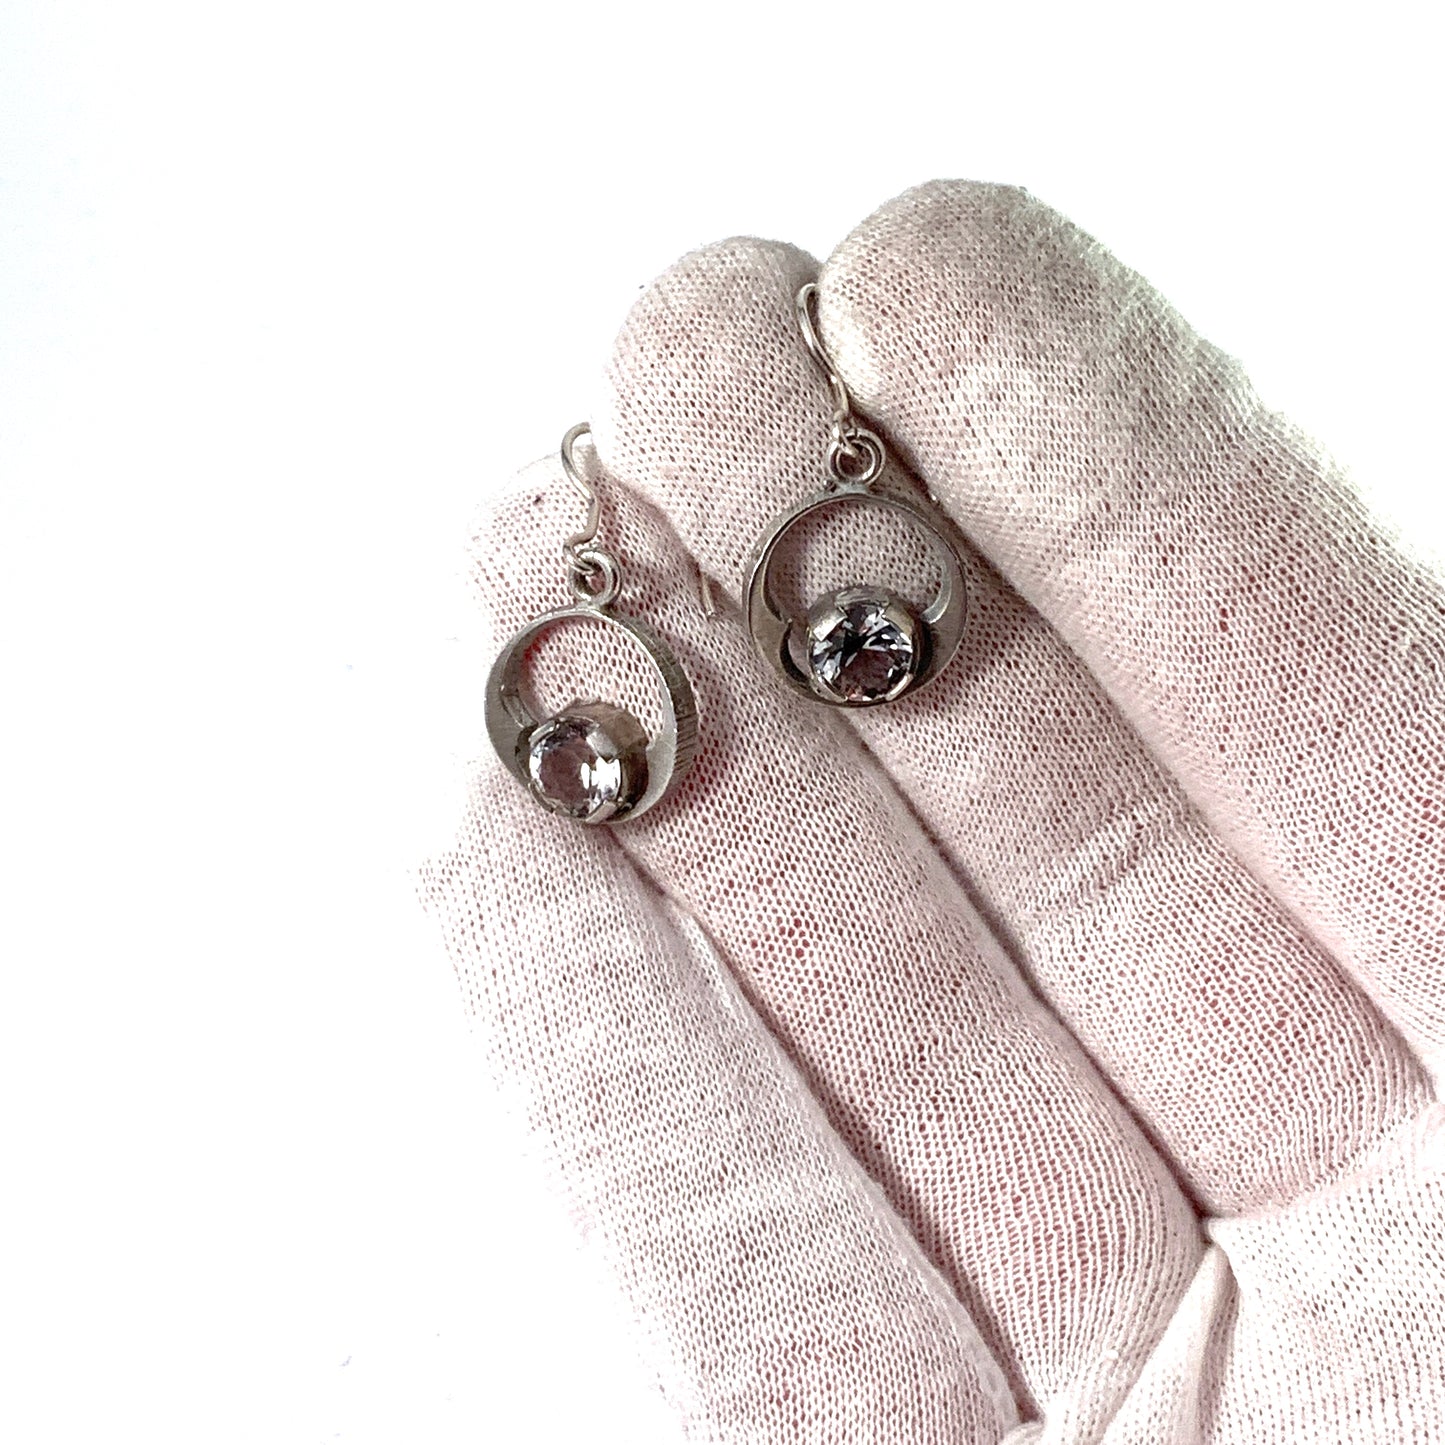 Sten & Laine, Finland. Vintage Sterling Silver Rock Crystal Earrings.